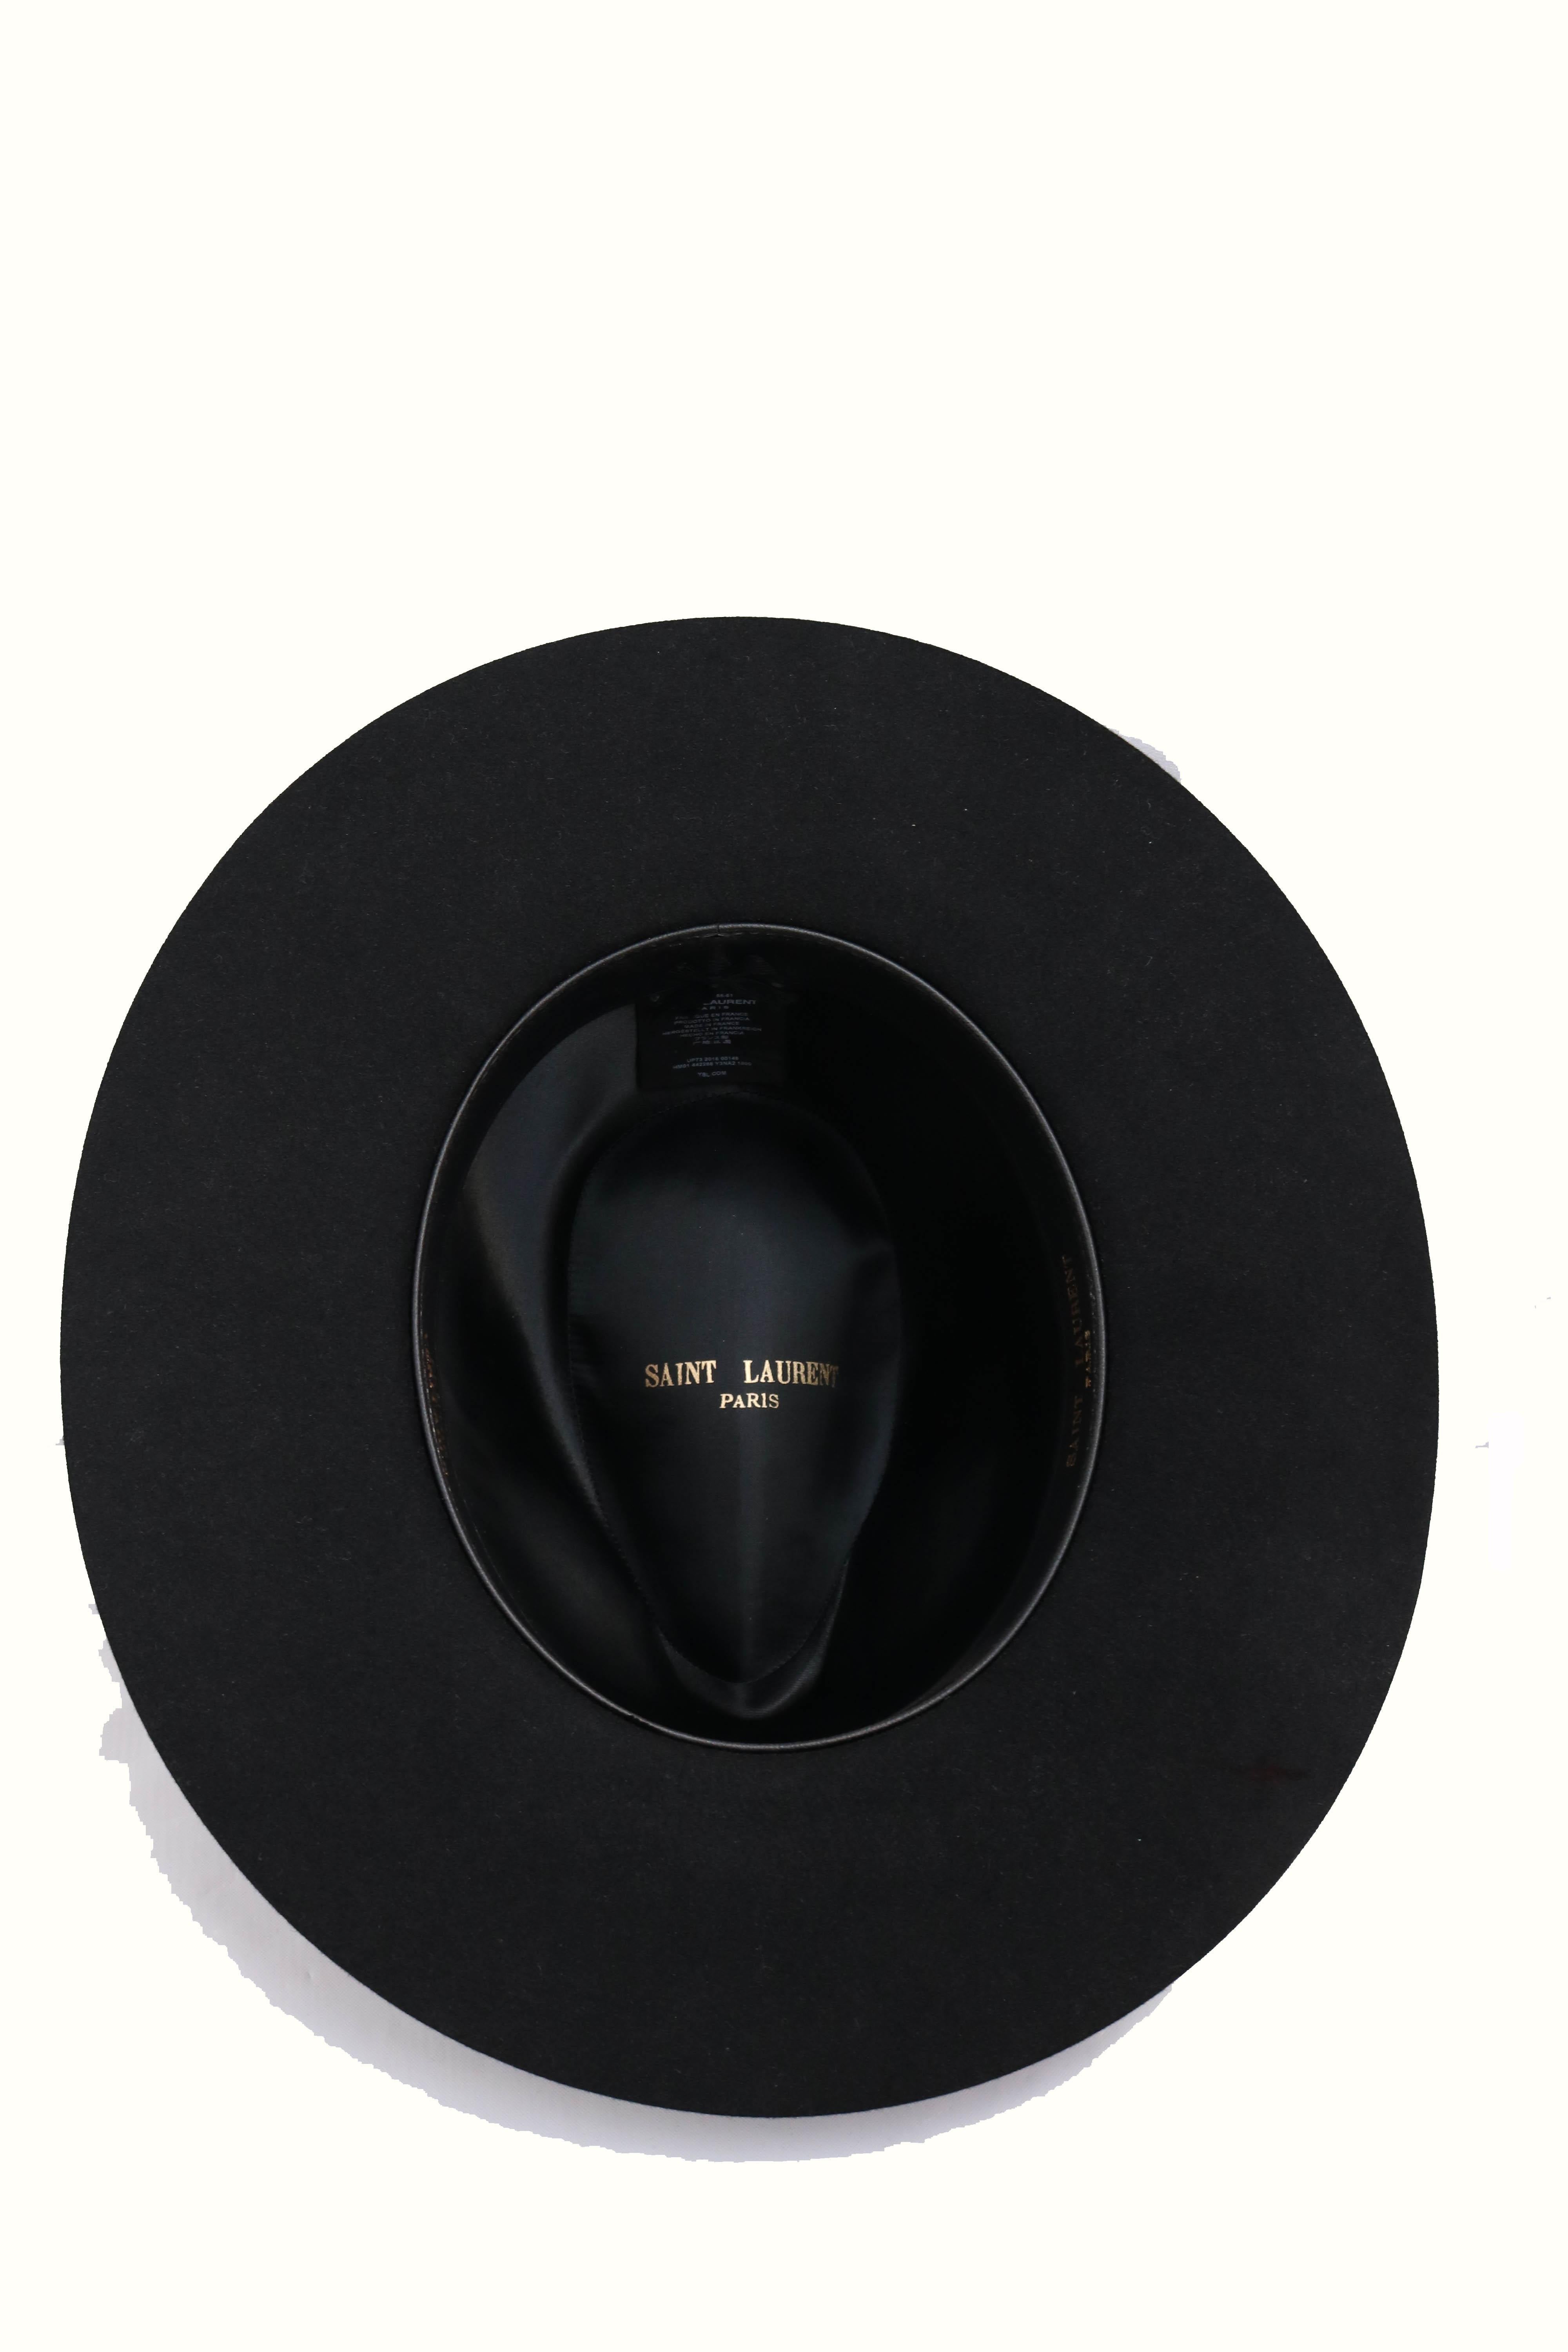 Saint Laurent Paris Hat  In Excellent Condition In Thousand Oaks, CA